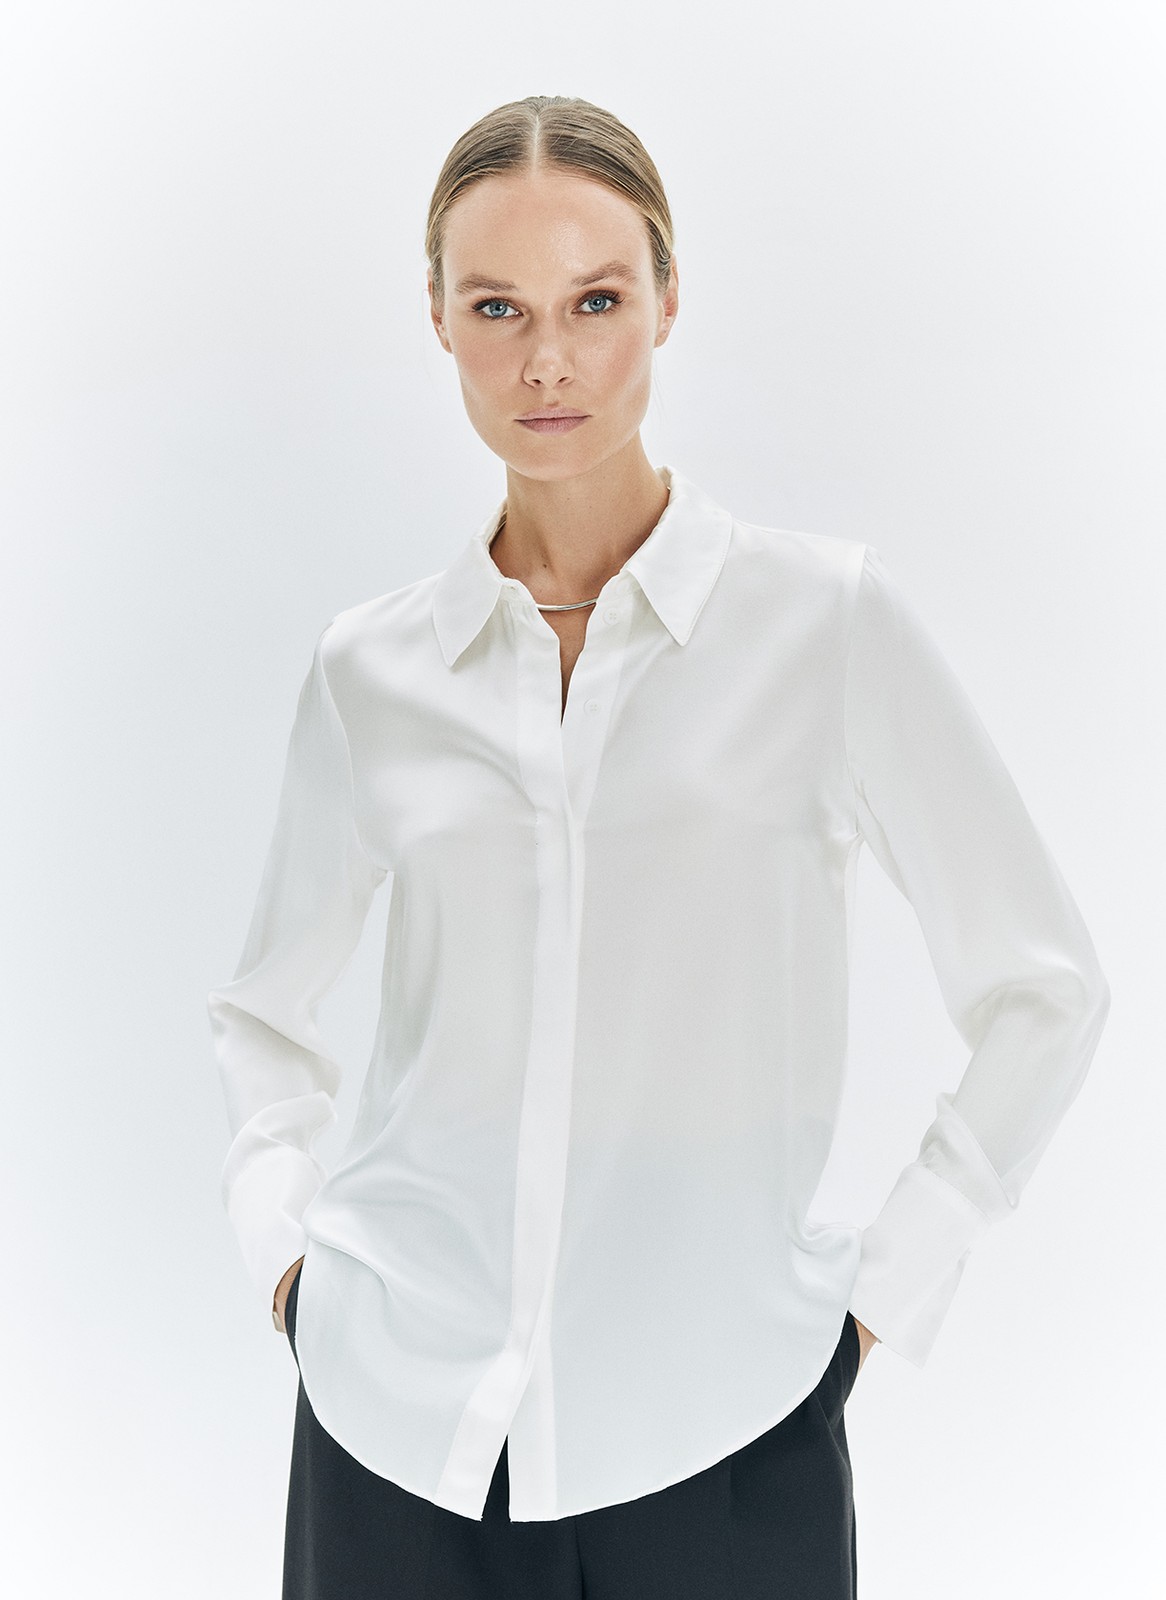 Шелковые женские блузки купить недорого в интернет-магазине GroupPrice